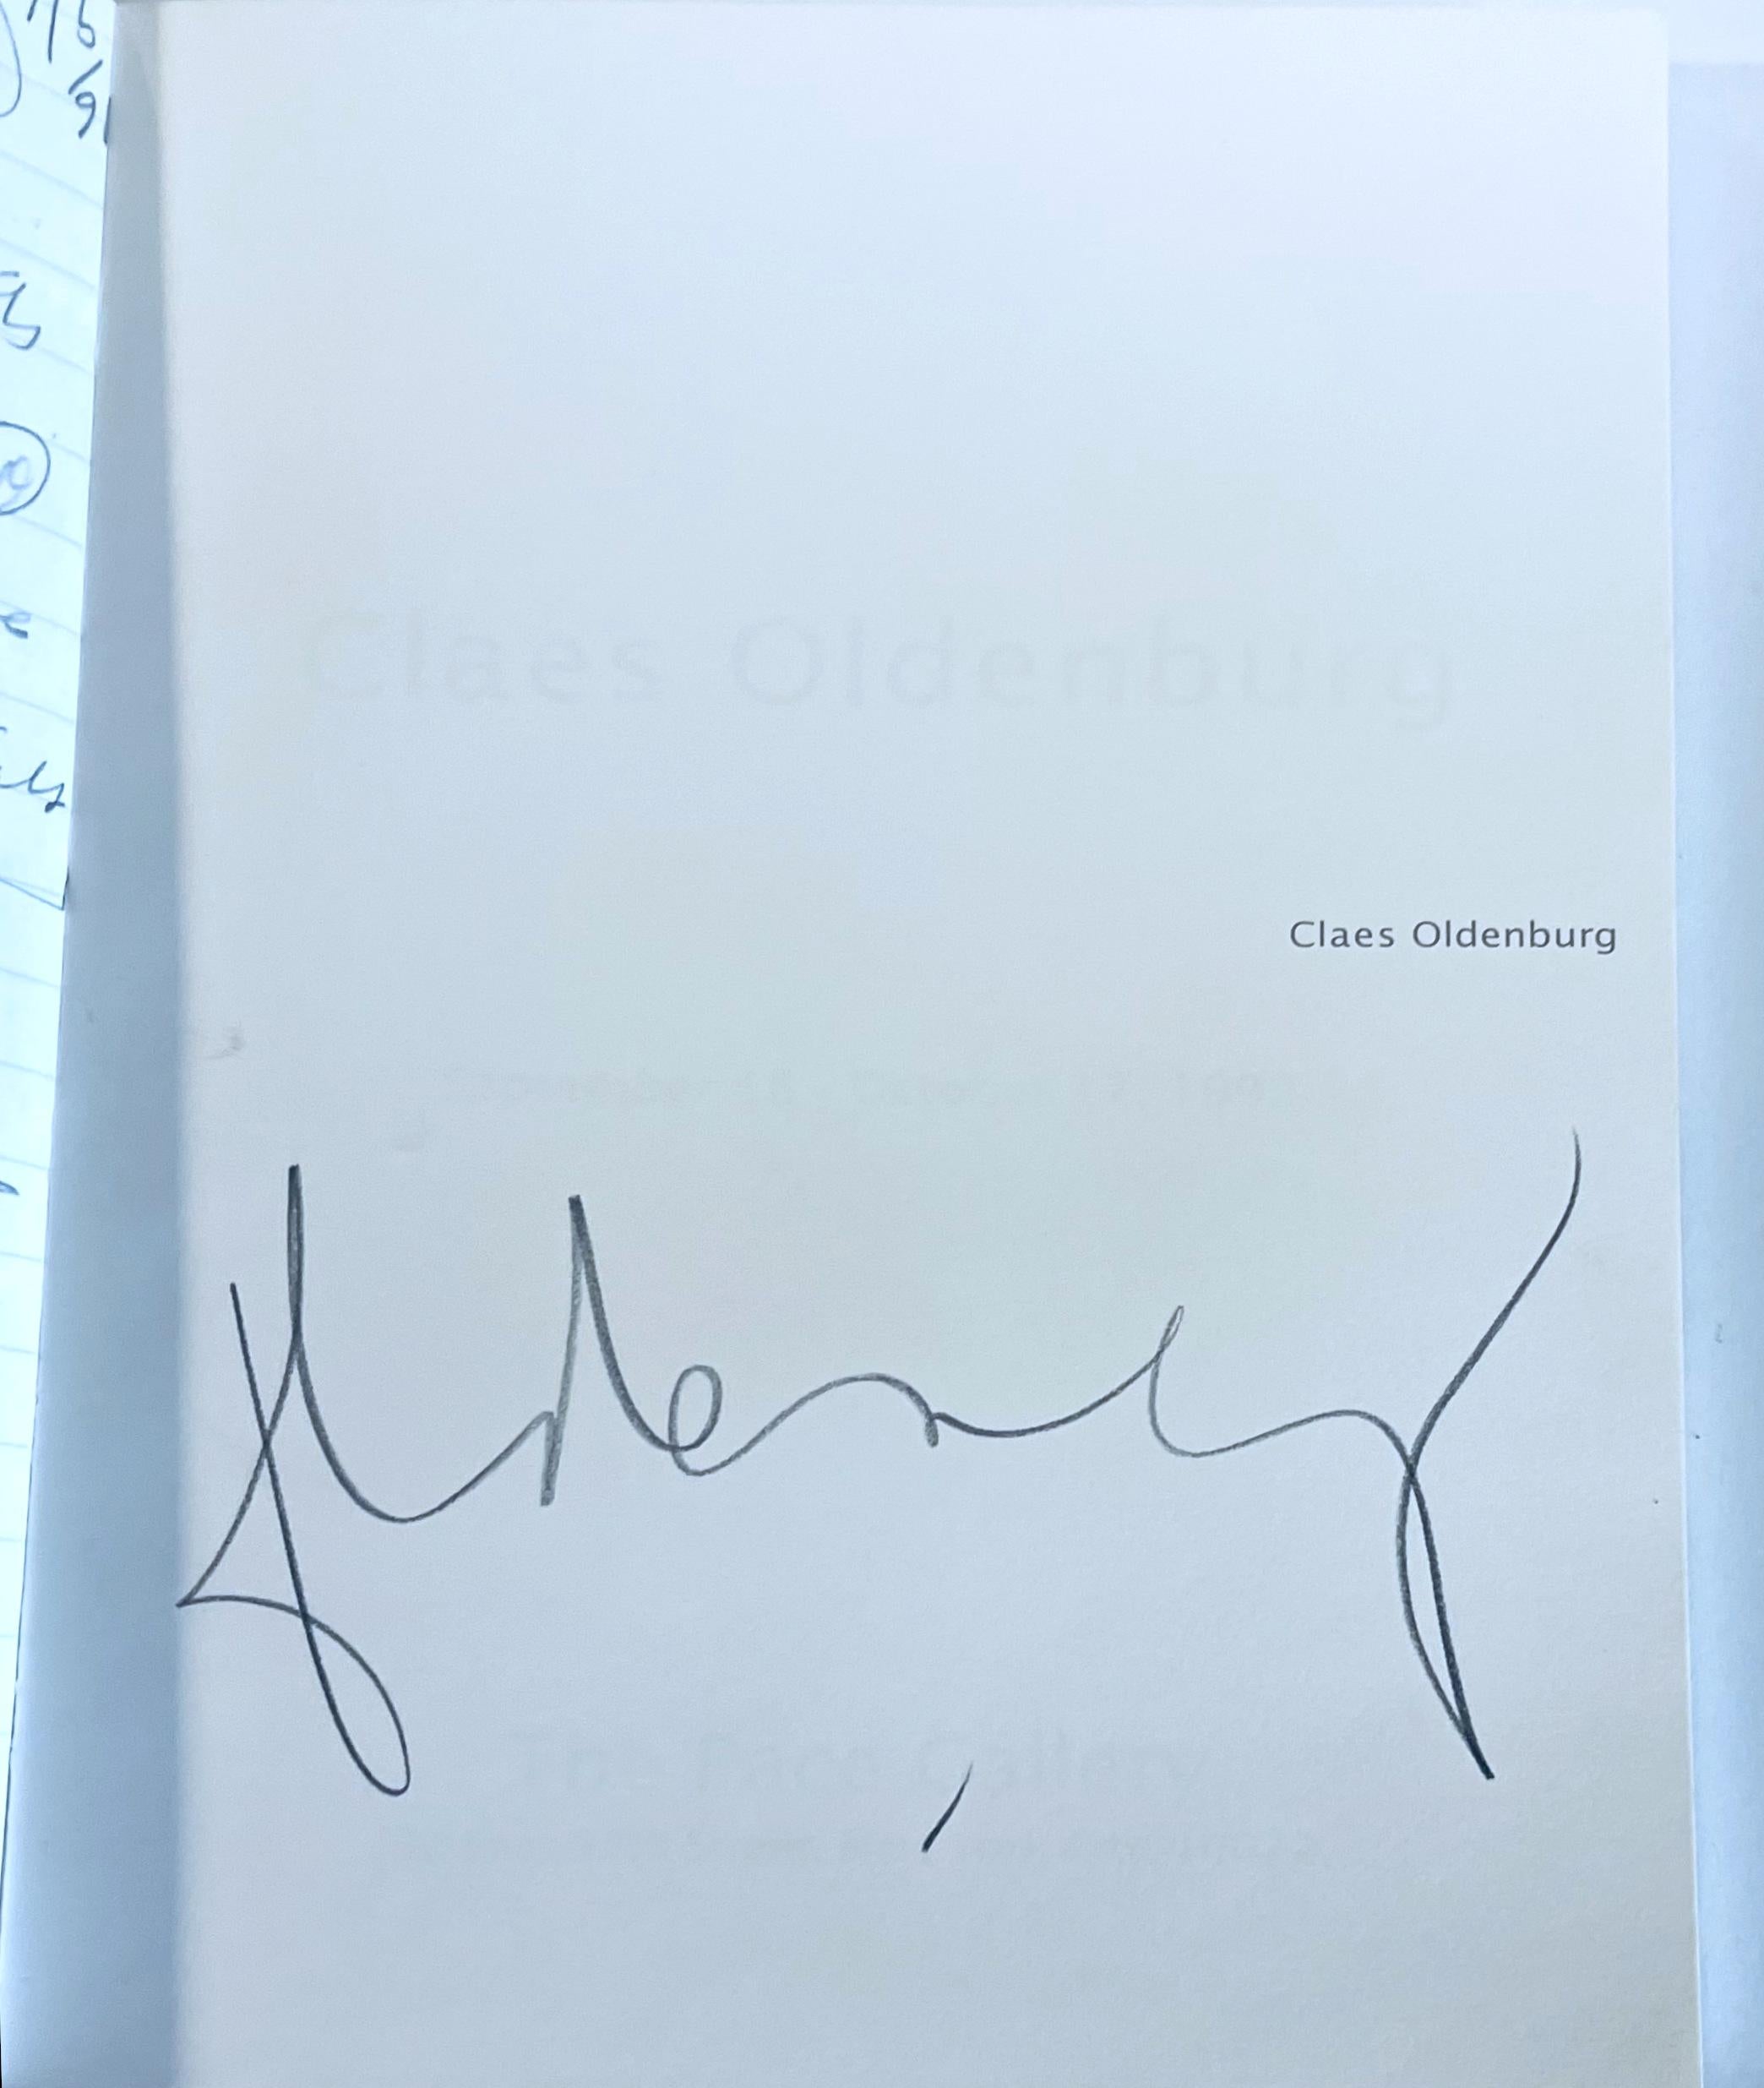 Claes Oldenburg, Claes Oldenburg (Hand signed by Claes Oldenburg), 1992 For Sale 1